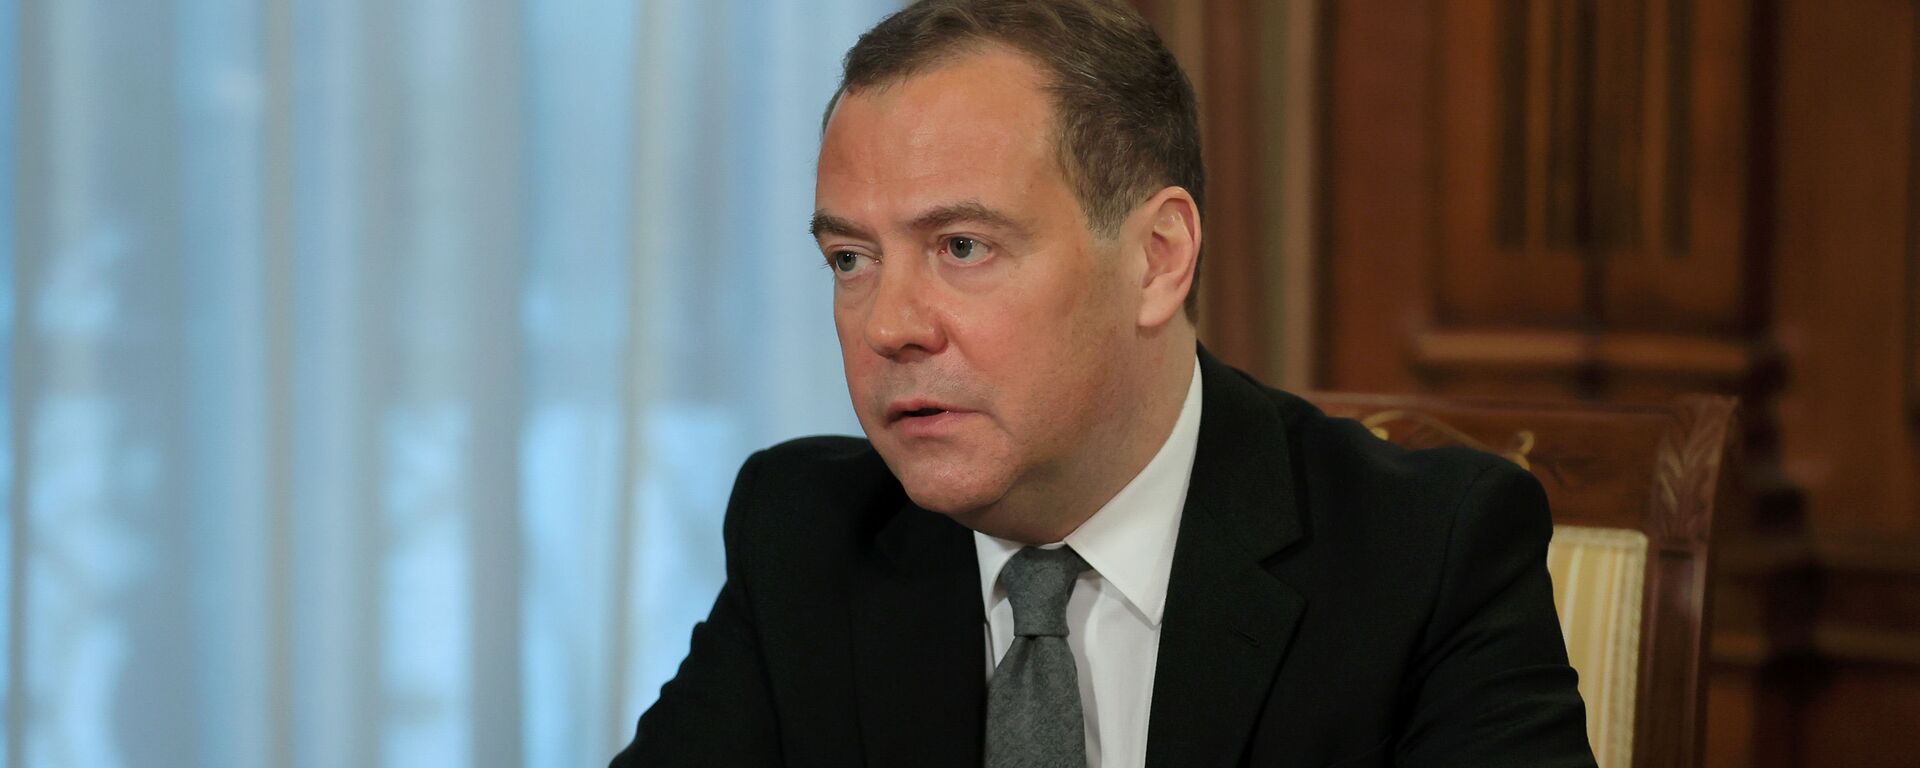 Заместитель председателя Совбеза РФ Д. Медведев дал интервью российским СМИ - Sputnik Аҧсны, 1920, 13.05.2022